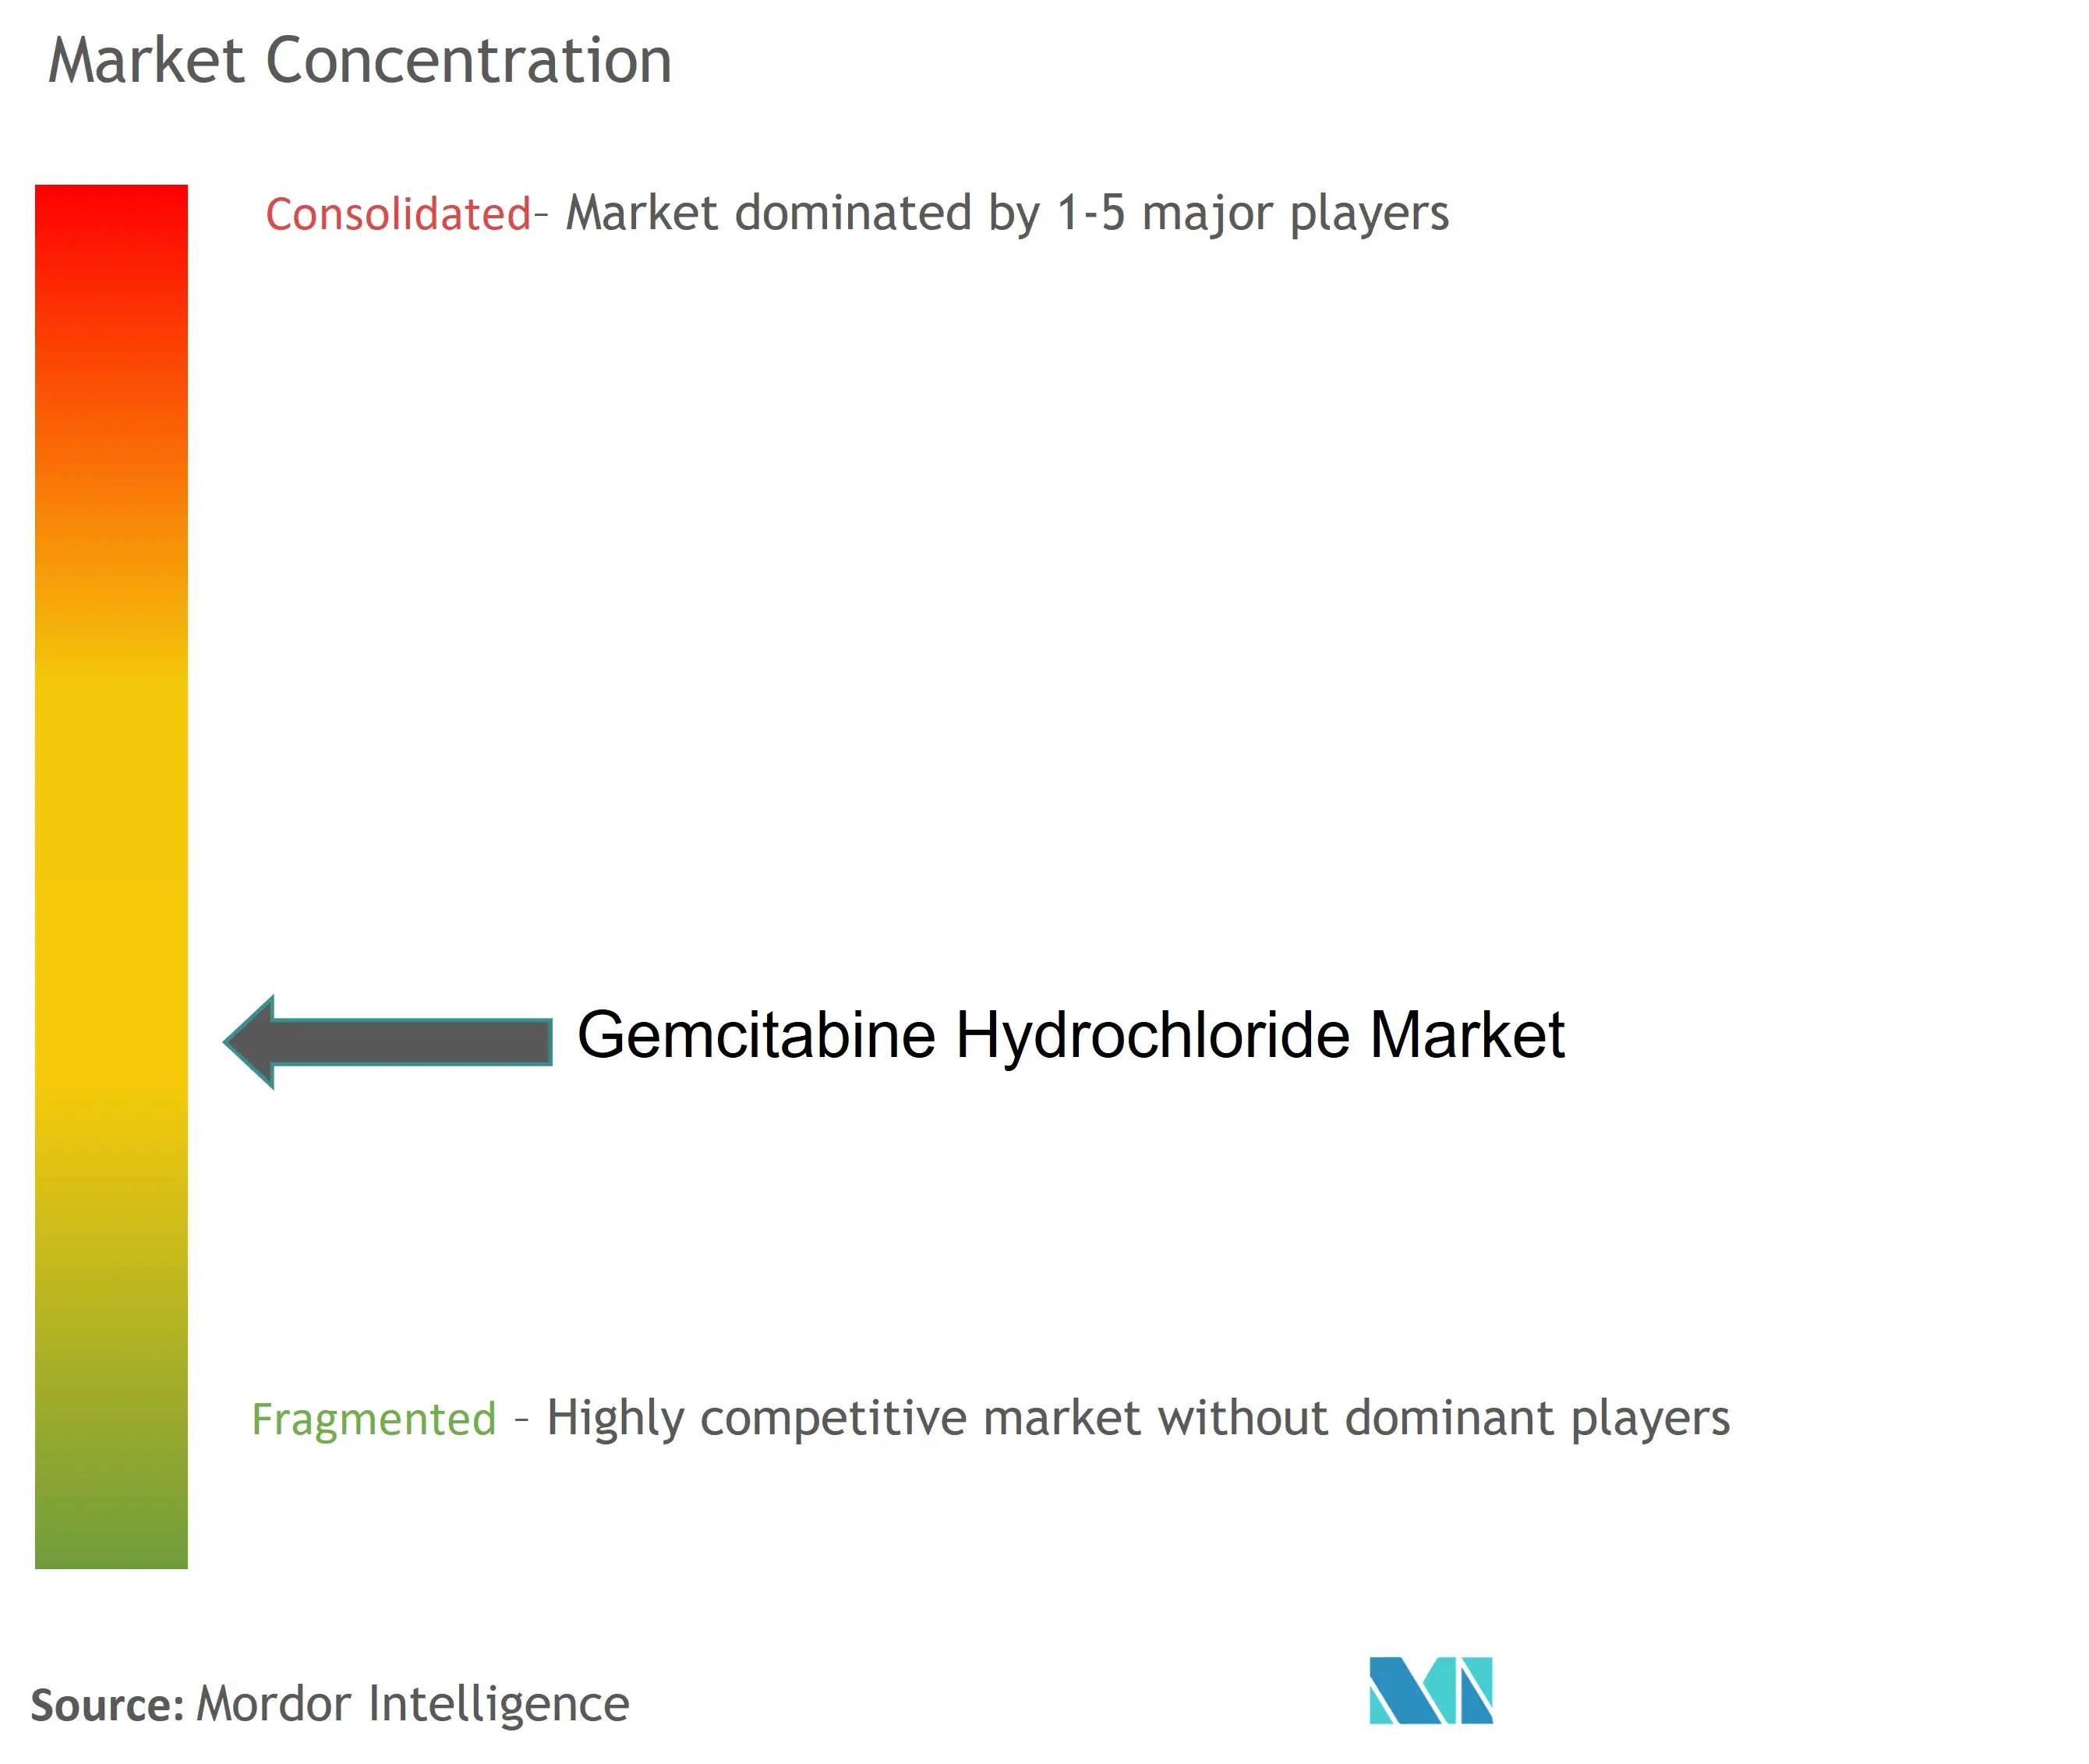 Concentración del mercado de clorhidrato de gemcitabina